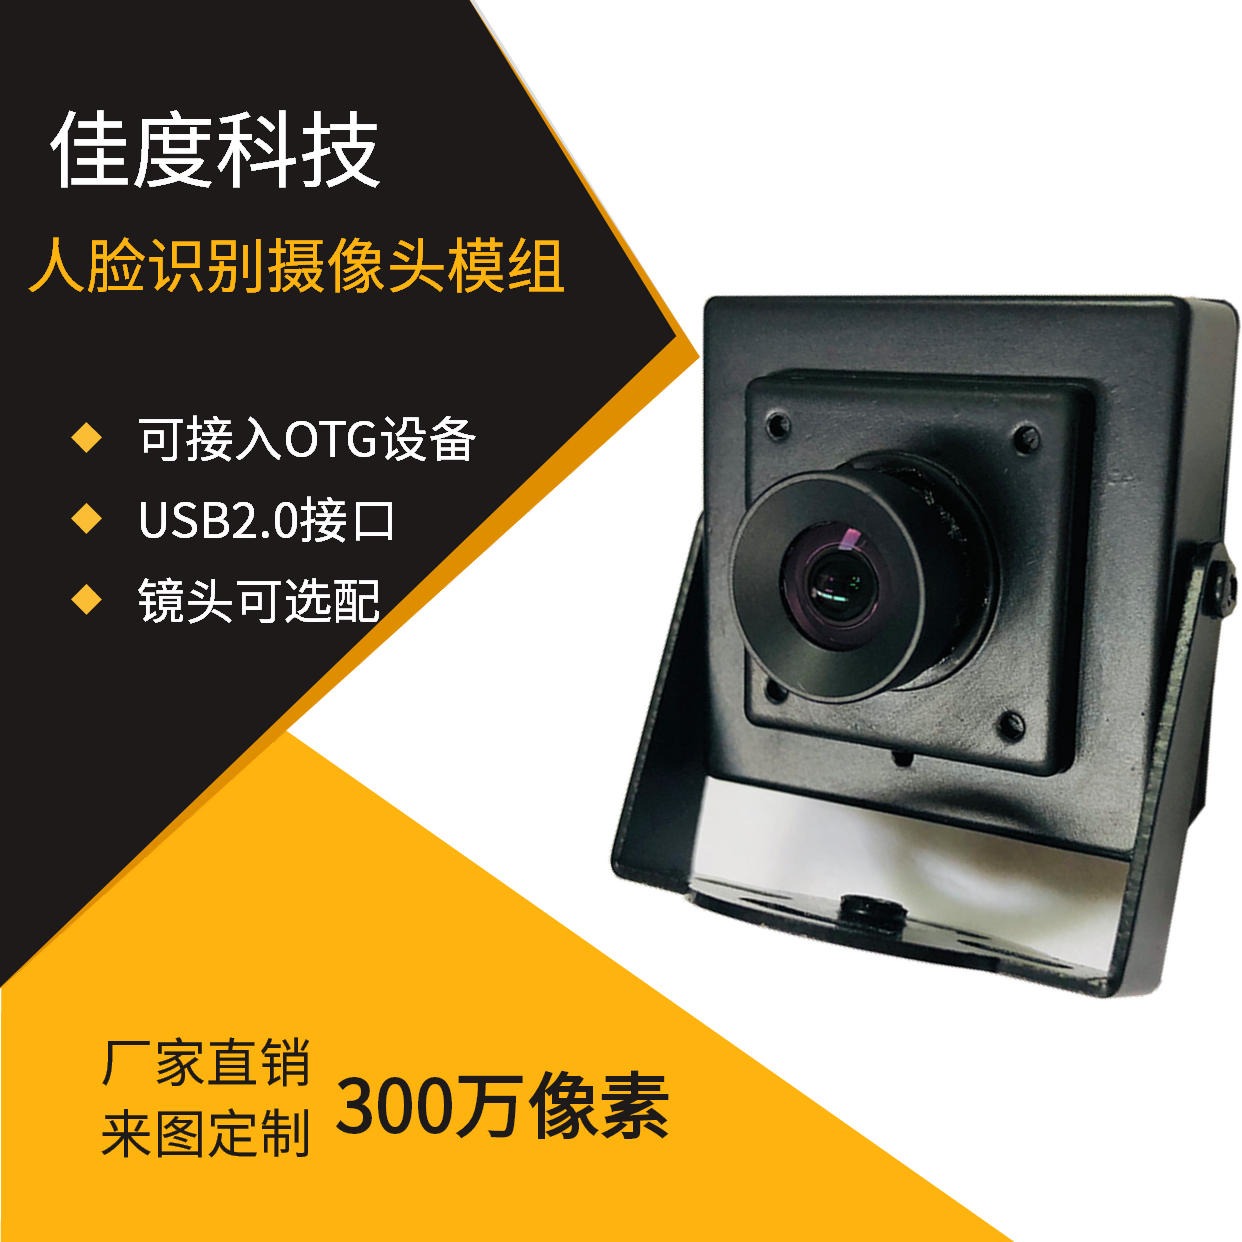 OTG摄像头模组 佳度厂家生产300W人脸识别OTG摄像头模组 可订做图片